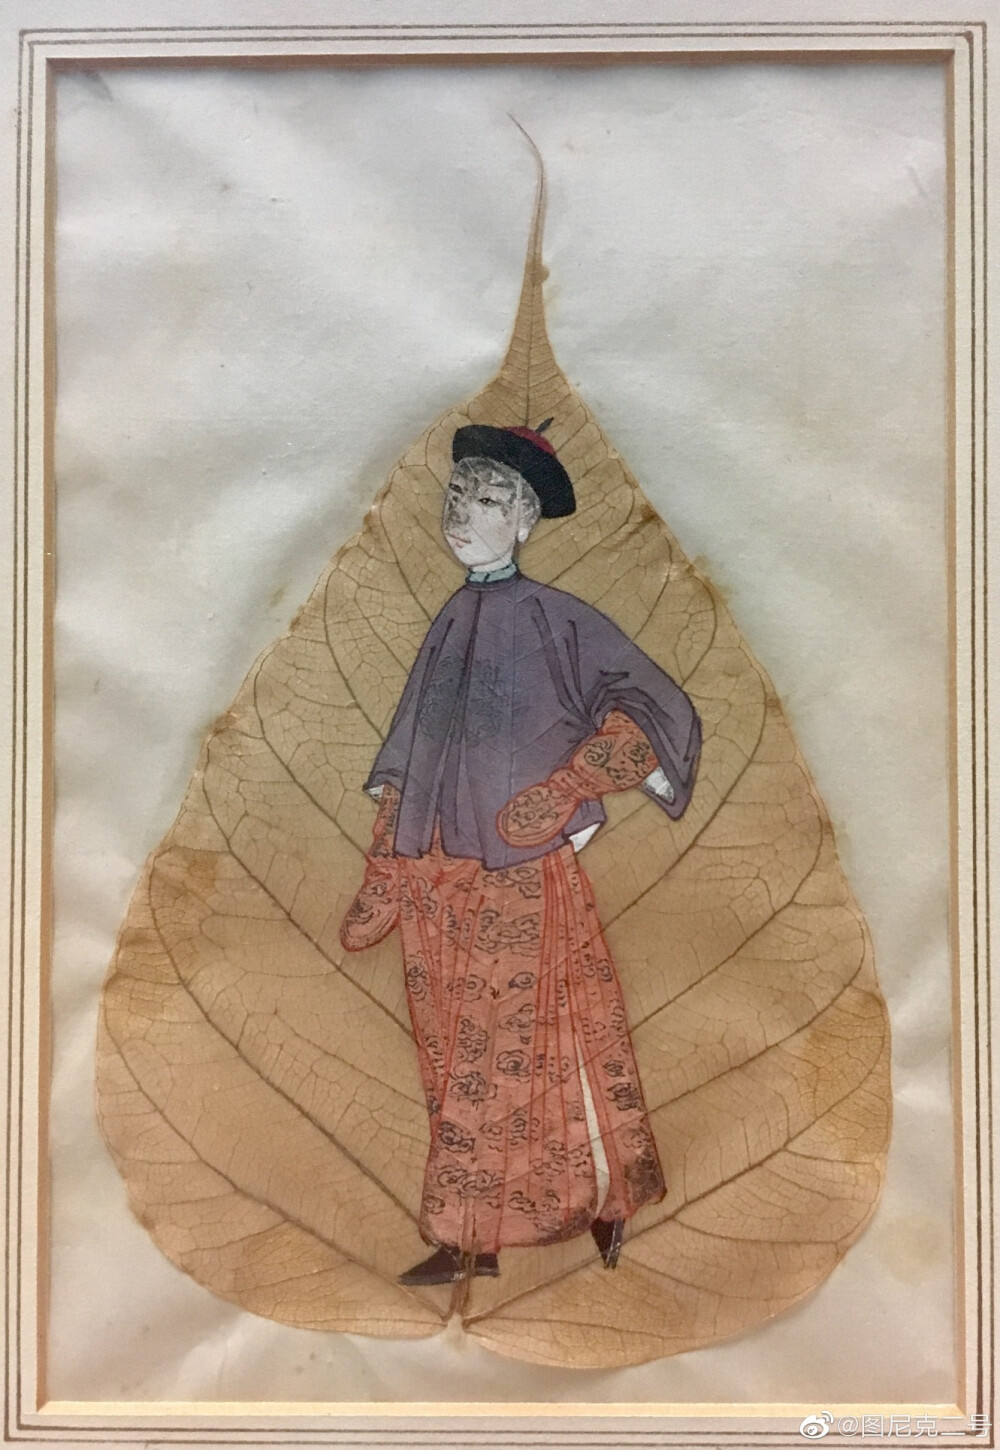 画在菩提榕树叶上的清代人物画,有意思的是服饰都是十分写实的时装,不